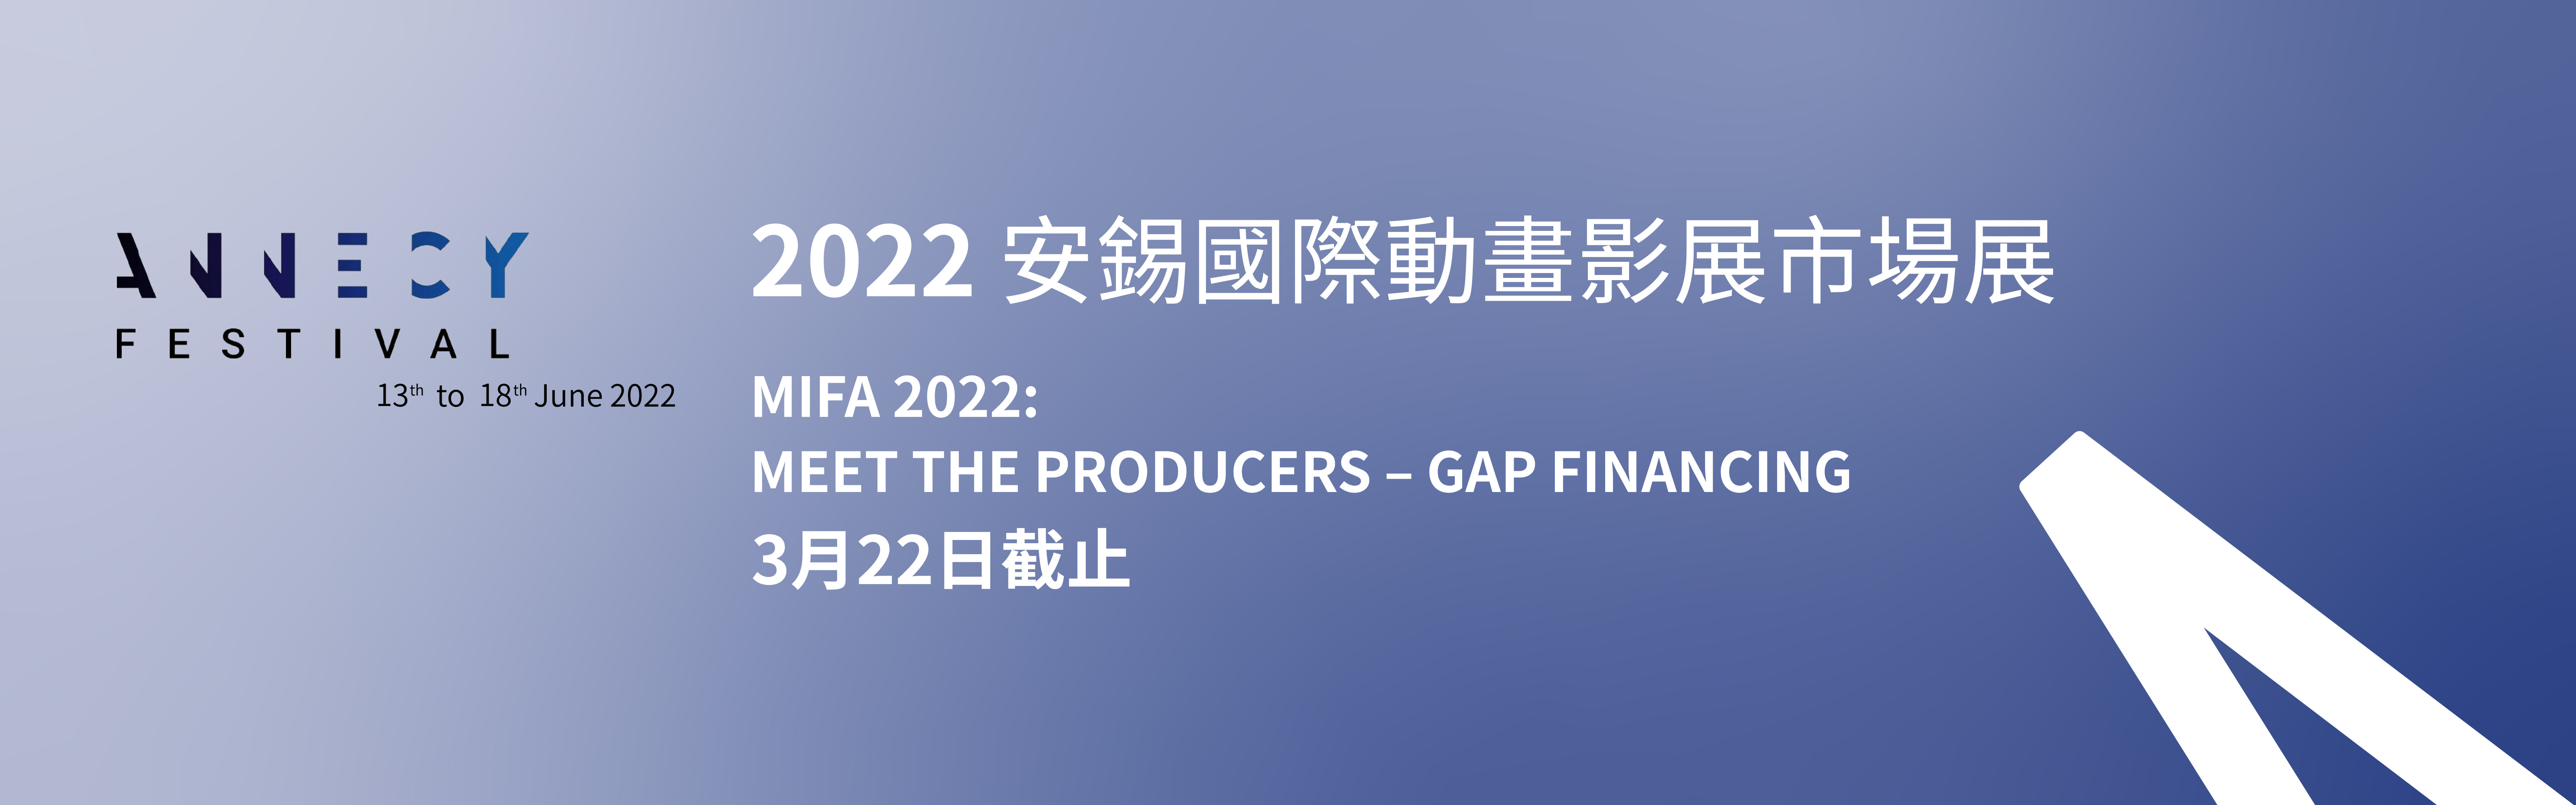 「2022 安錫國際動畫影展與市場展」 MEET THE PRODUCERS – GAP FINANCING